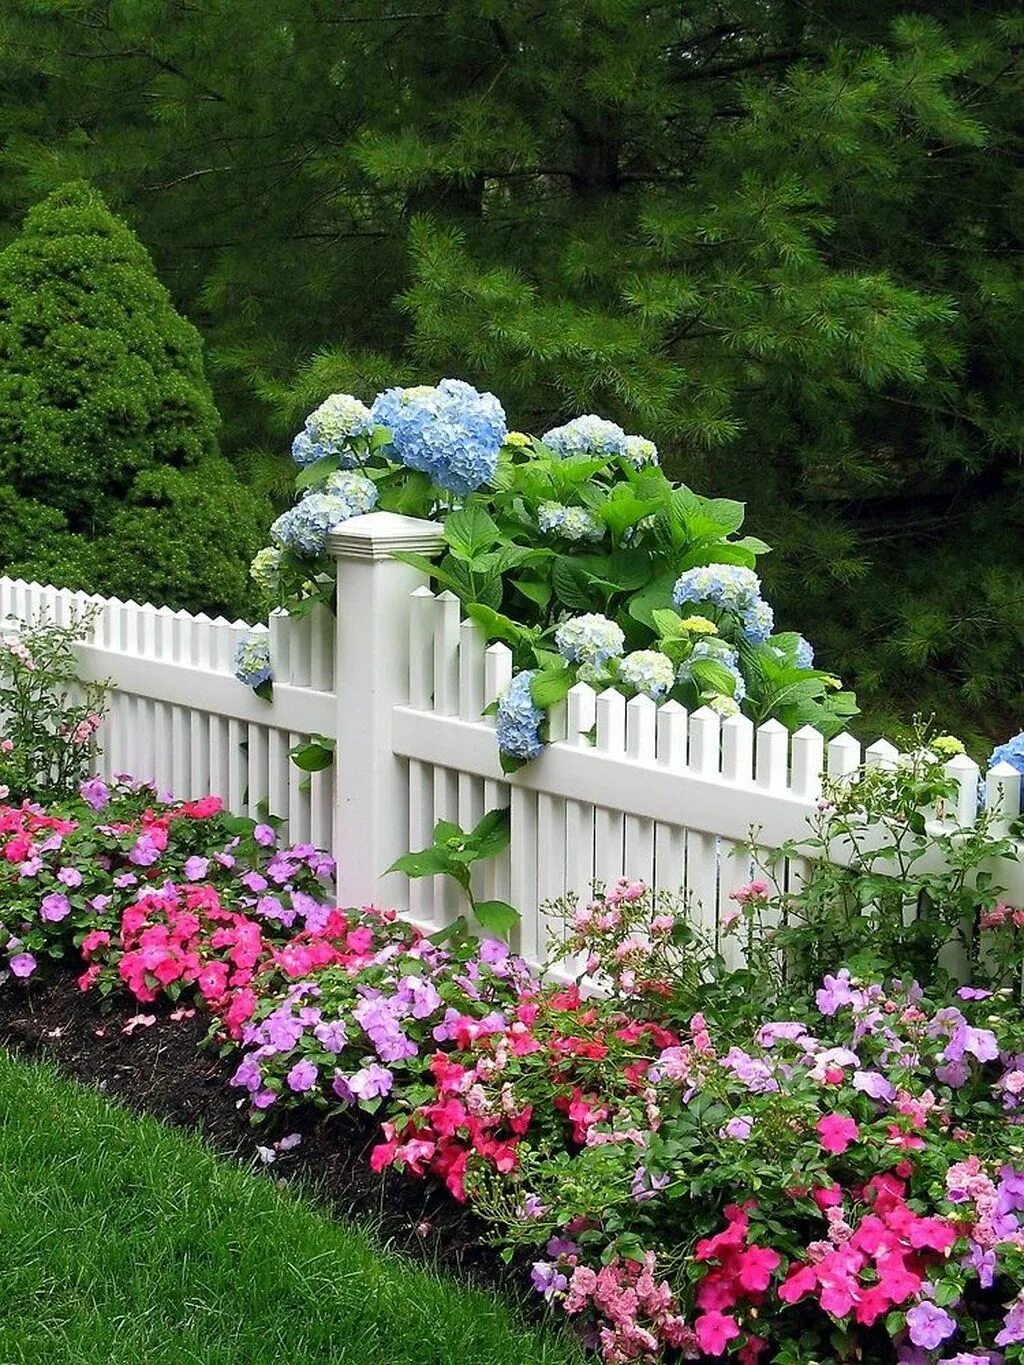 Посадить цветы возле дома. Палисадники клумбы лужайки. Палисадник Энфилд. Призаборная клумба. Палисад вдоль забора.